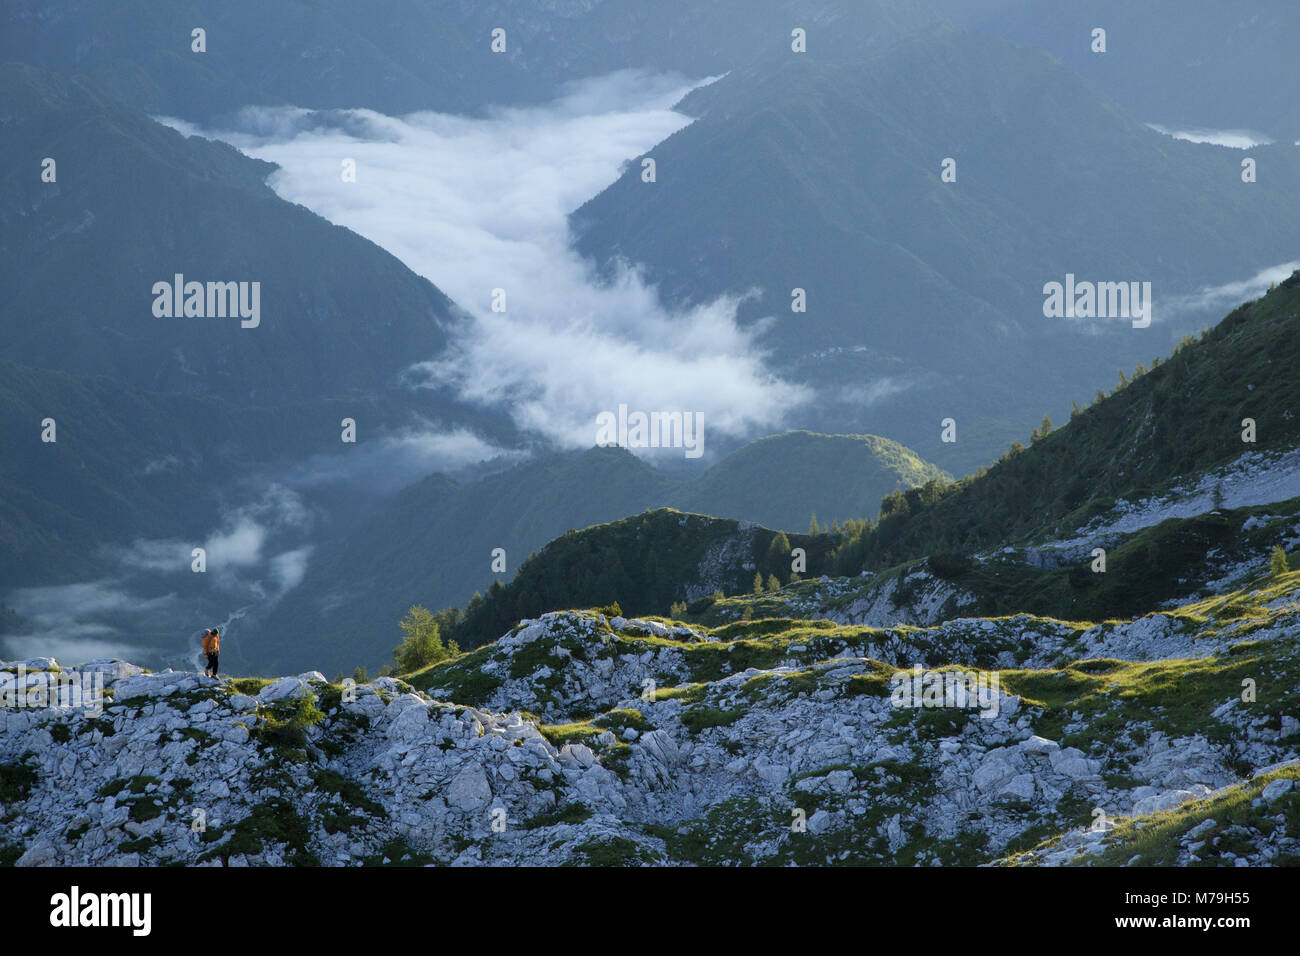 Escursionismo in scena a Monte Cavallo, Dolomiti heigh percorso n. 7, le Alpi Carniche, Veneto, Italia, Foto Stock